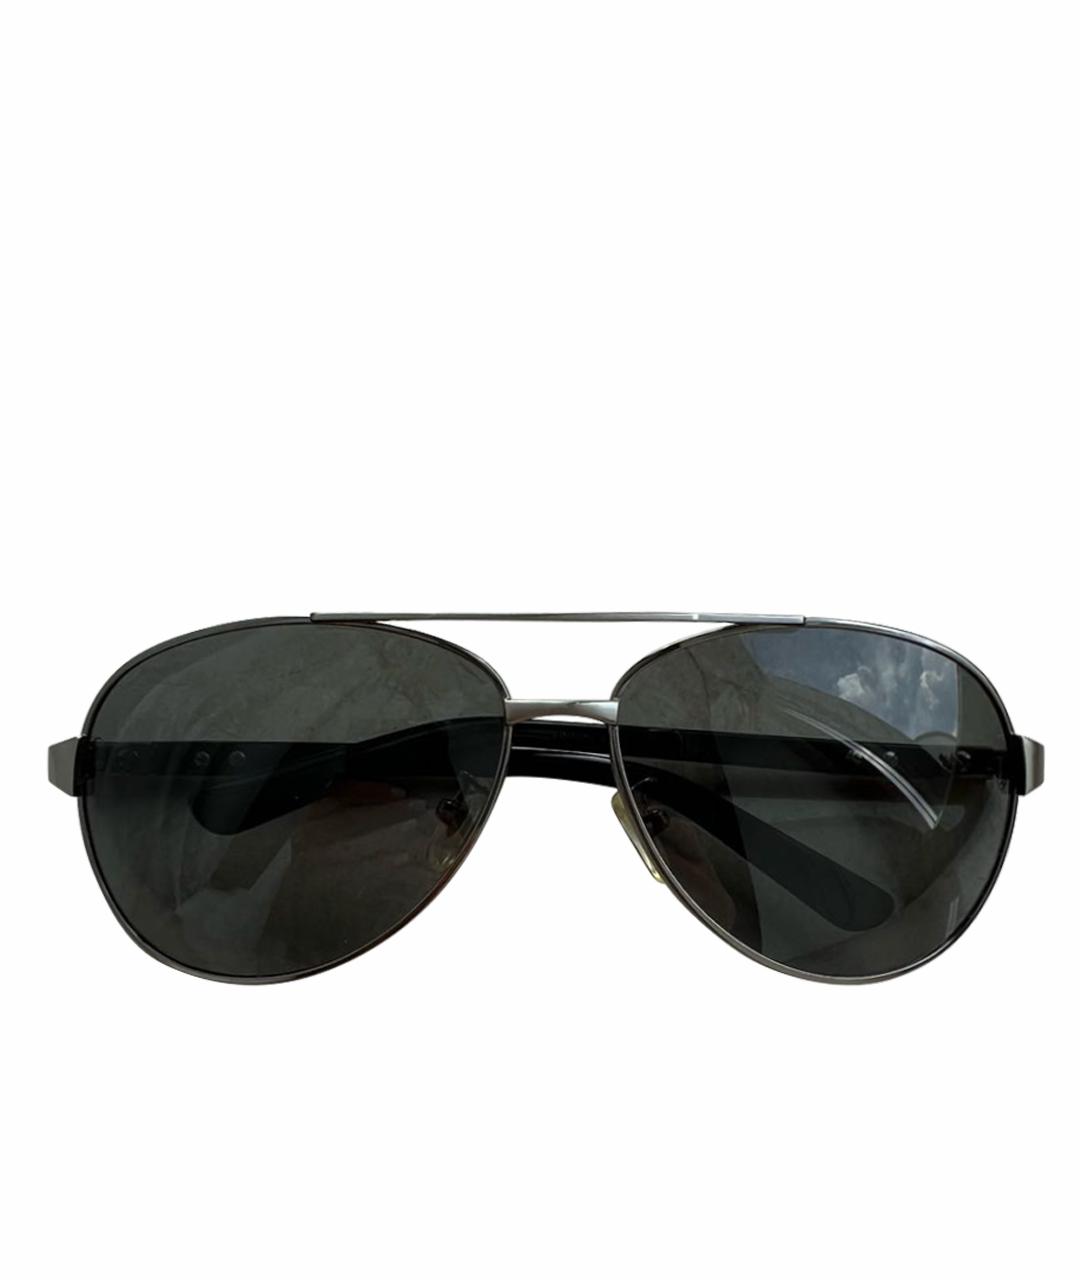 CARTIER Черные солнцезащитные очки, фото 1